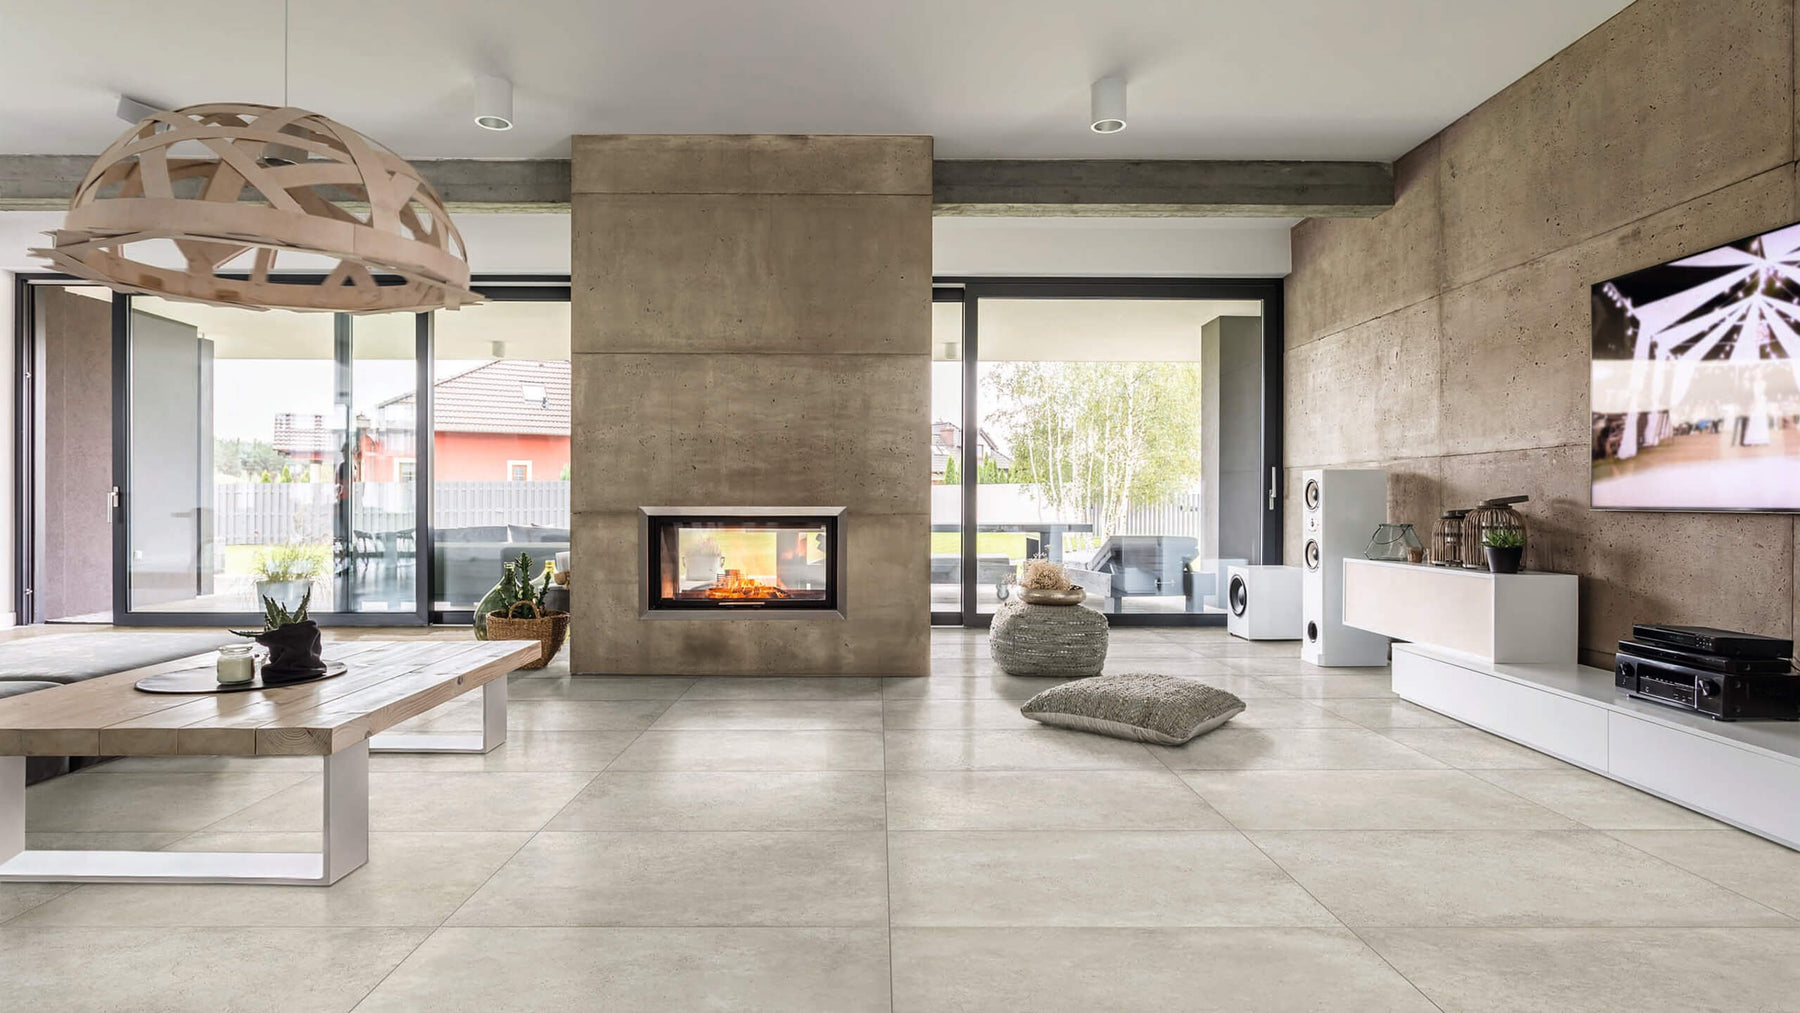 Best Tile Flooring For Living Room